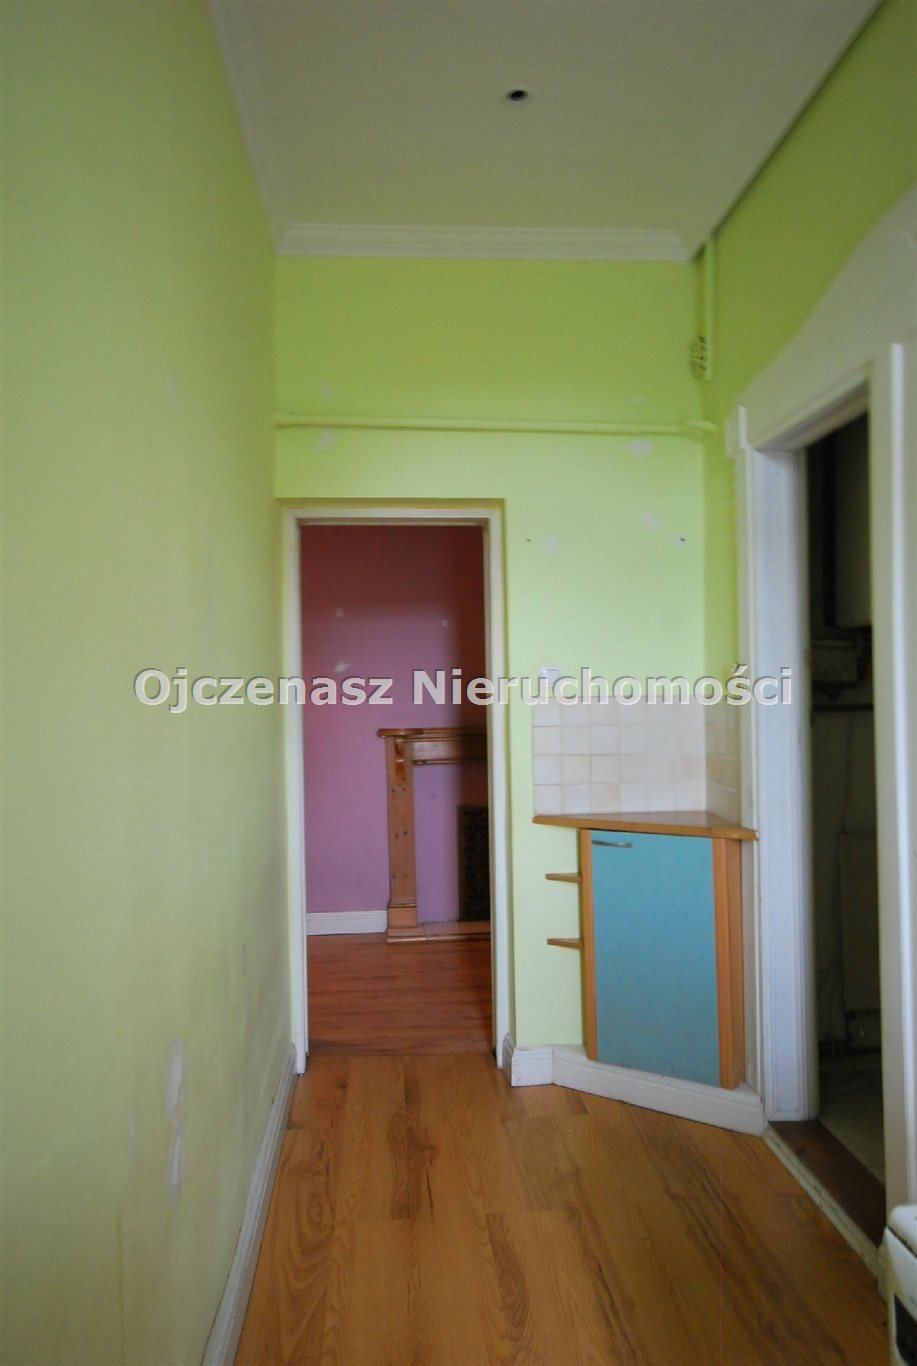 Mieszkanie trzypokojowe na sprzedaż Solec Kujawski  79m2 Foto 10